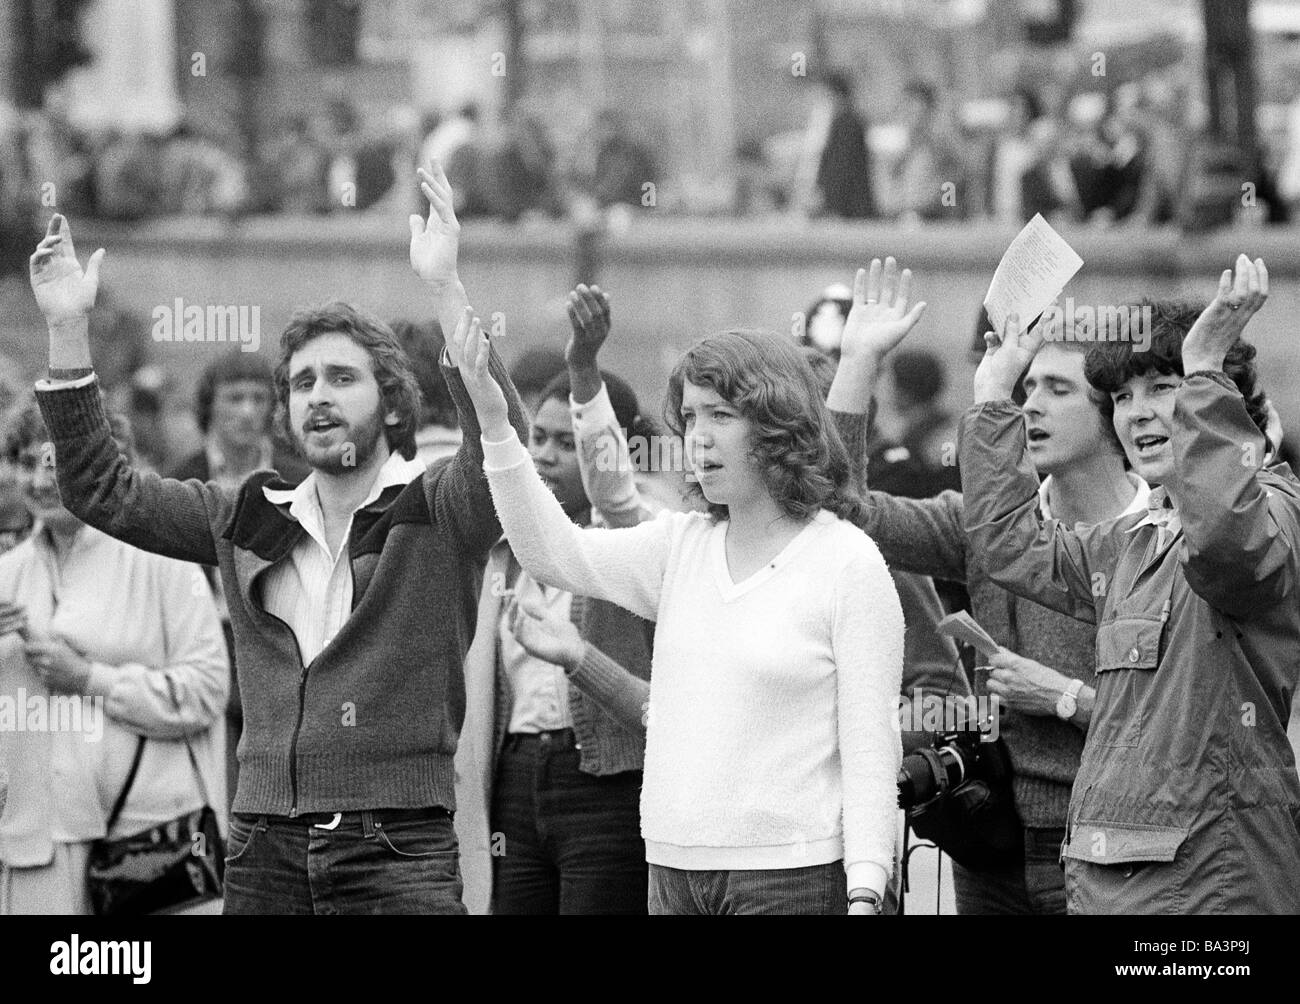 Negli anni settanta, foto in bianco e nero, le persone in una dimostrazione di pace, uomini di età compresa tra i 25 e i 30 anni, le donne di età compresa tra i 20 e i 35 anni, Gran Bretagna, Inghilterra, Londra Foto Stock